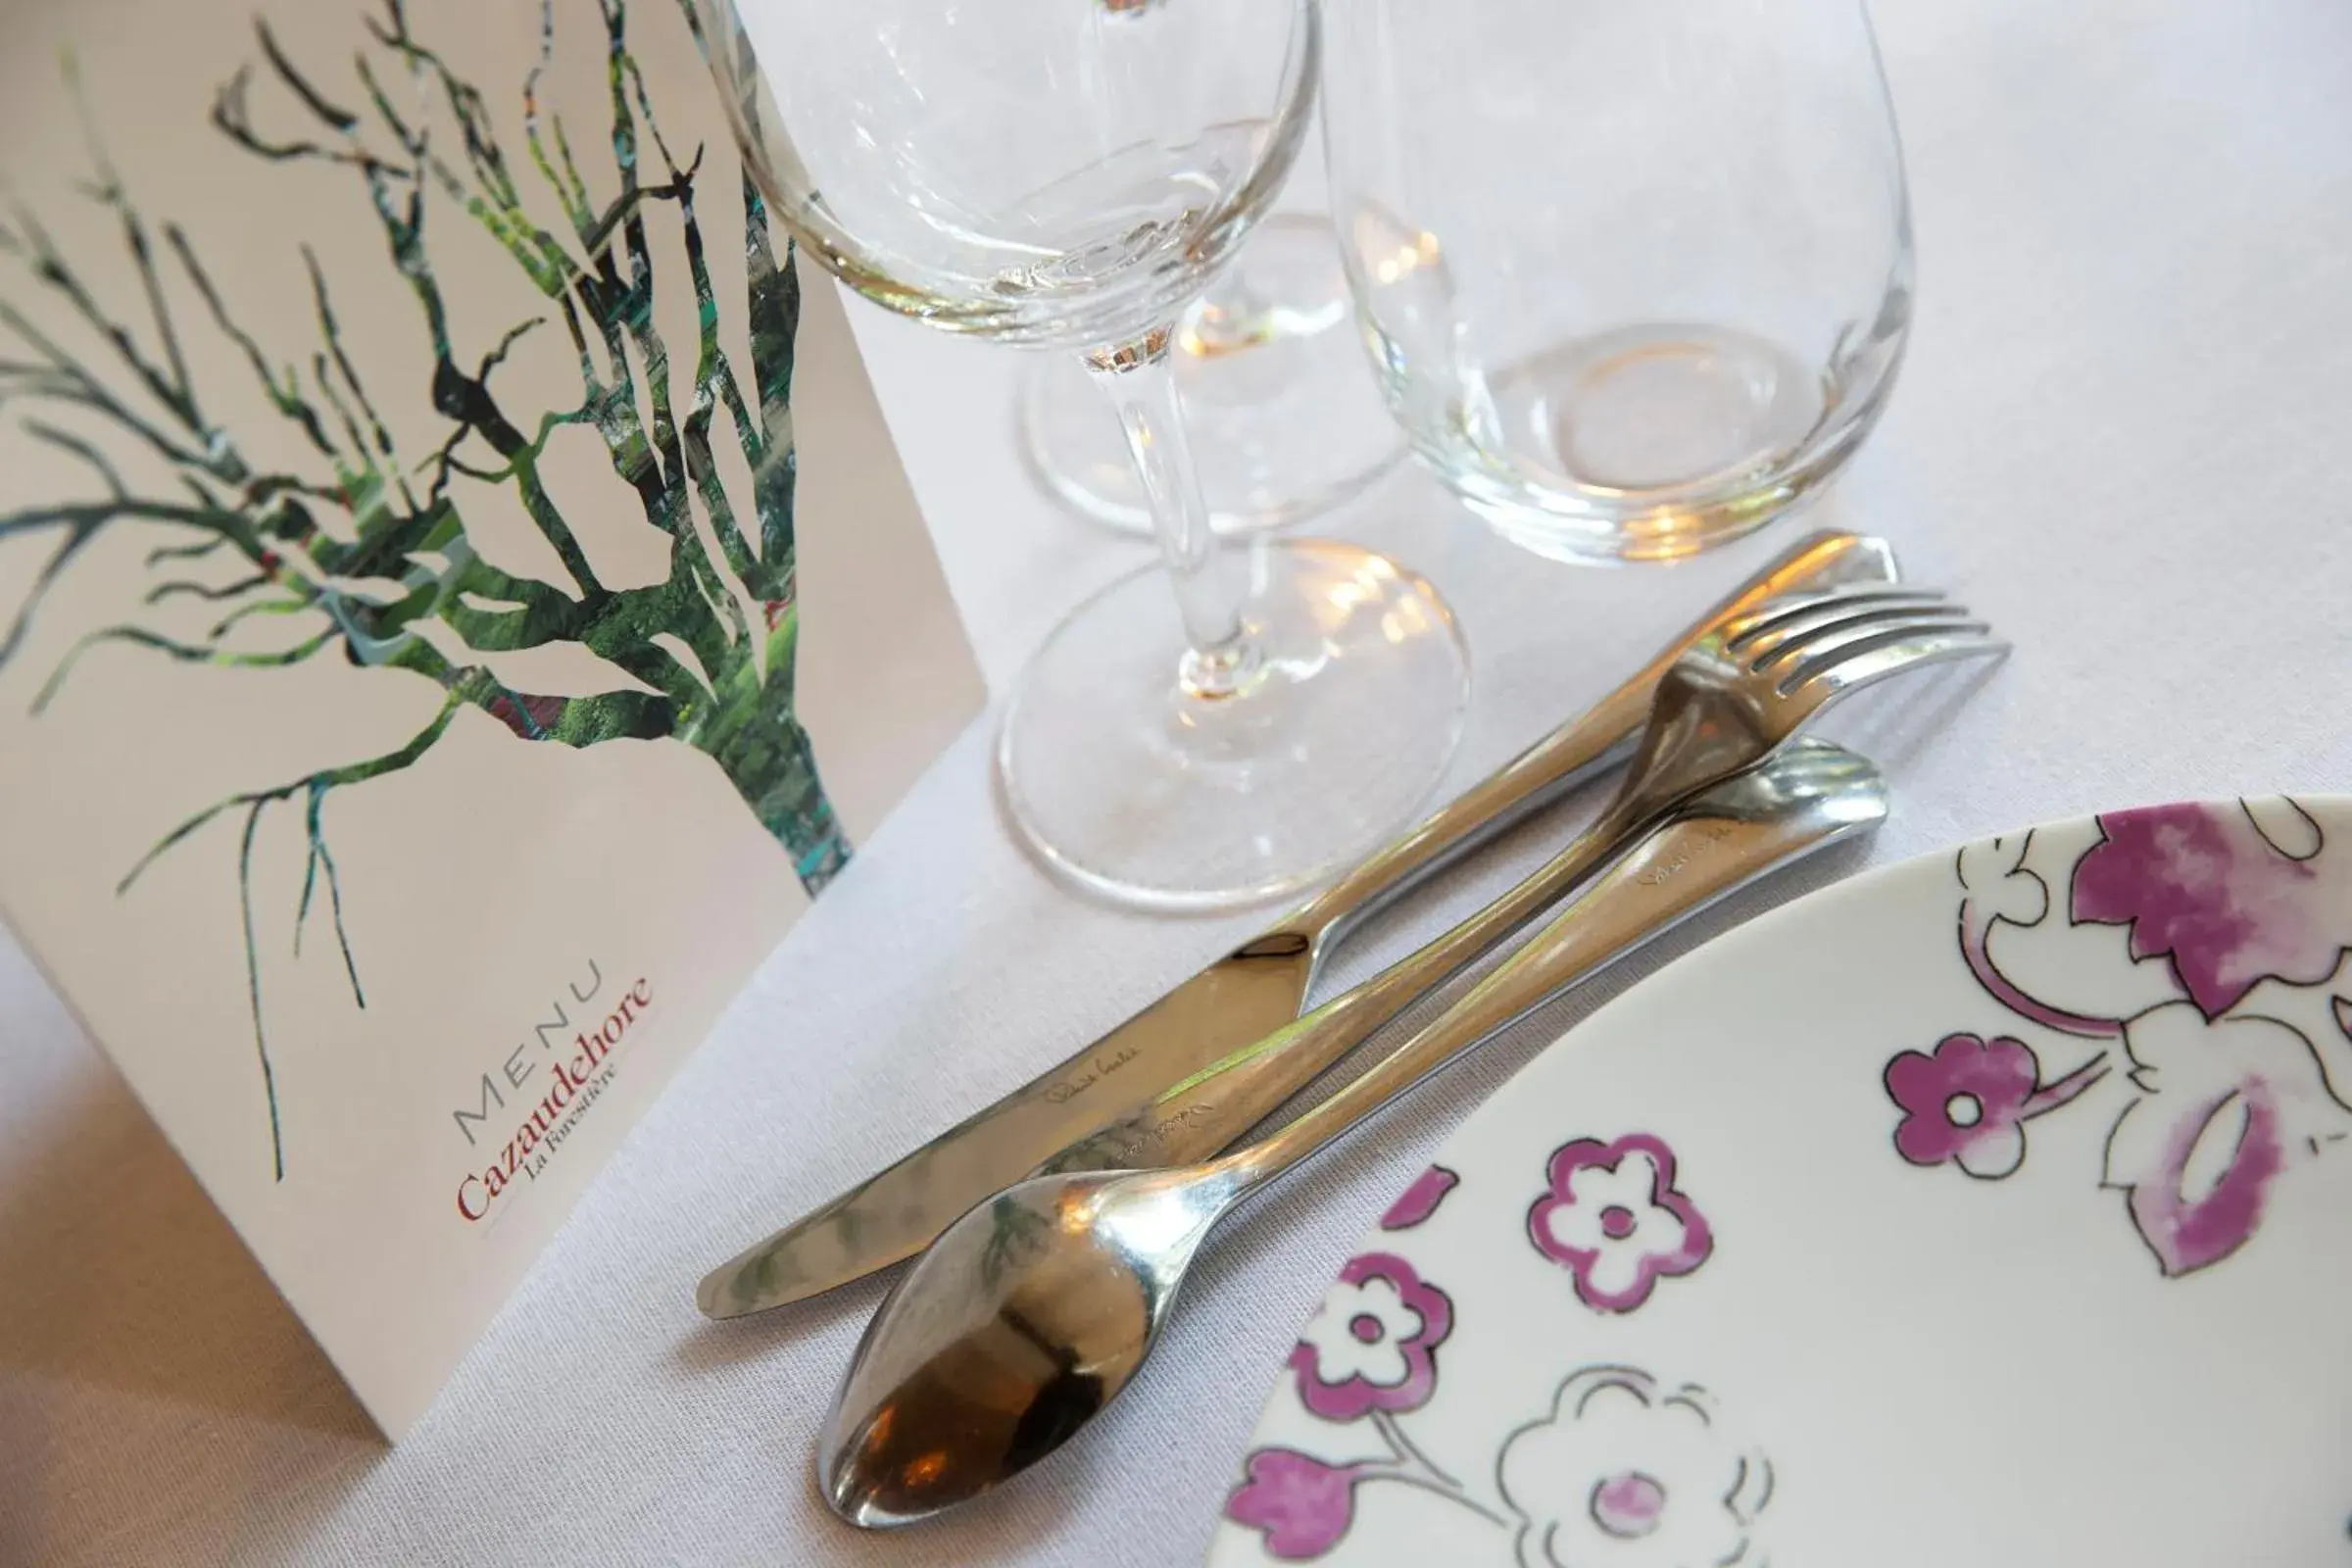 Banquet/Function facilities, Restaurant/Places to Eat in Cazaudehore, hôtel de charme au vert